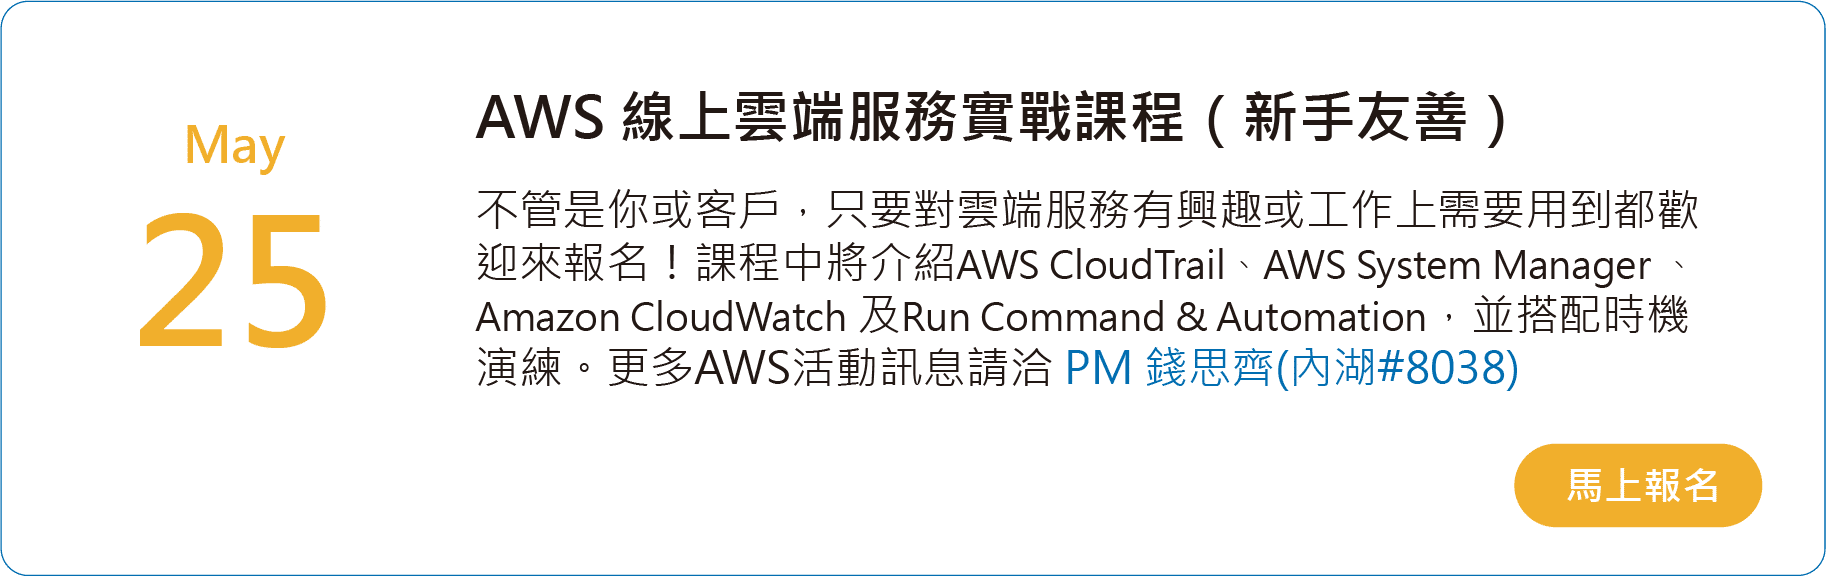 AWS 線上雲端服務實戰課程